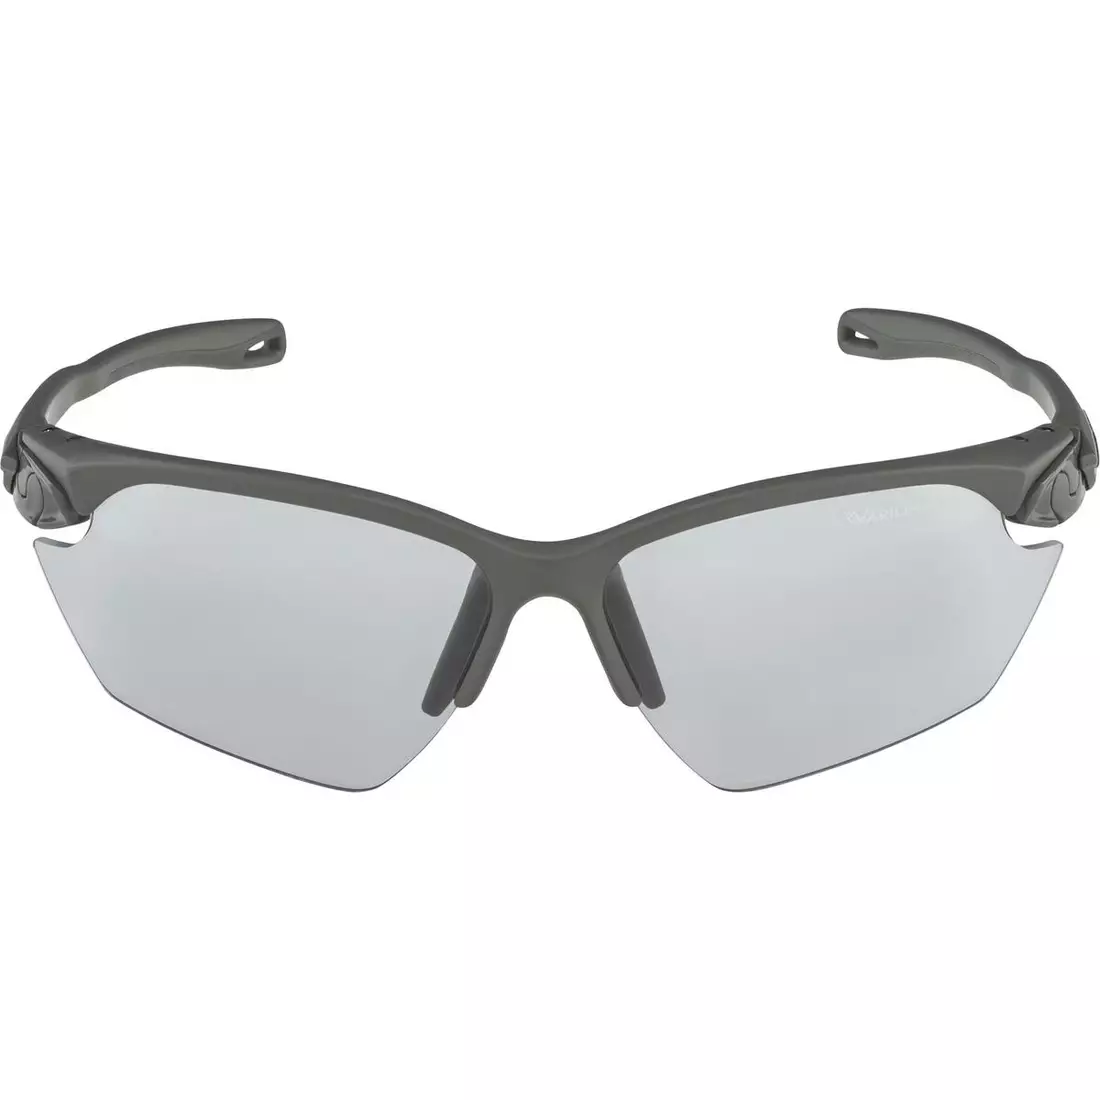 ALPINA TWIST FIVE HR V SMALL Photochromic sports glasses MOON-GREY MATT MIRROR BLACK